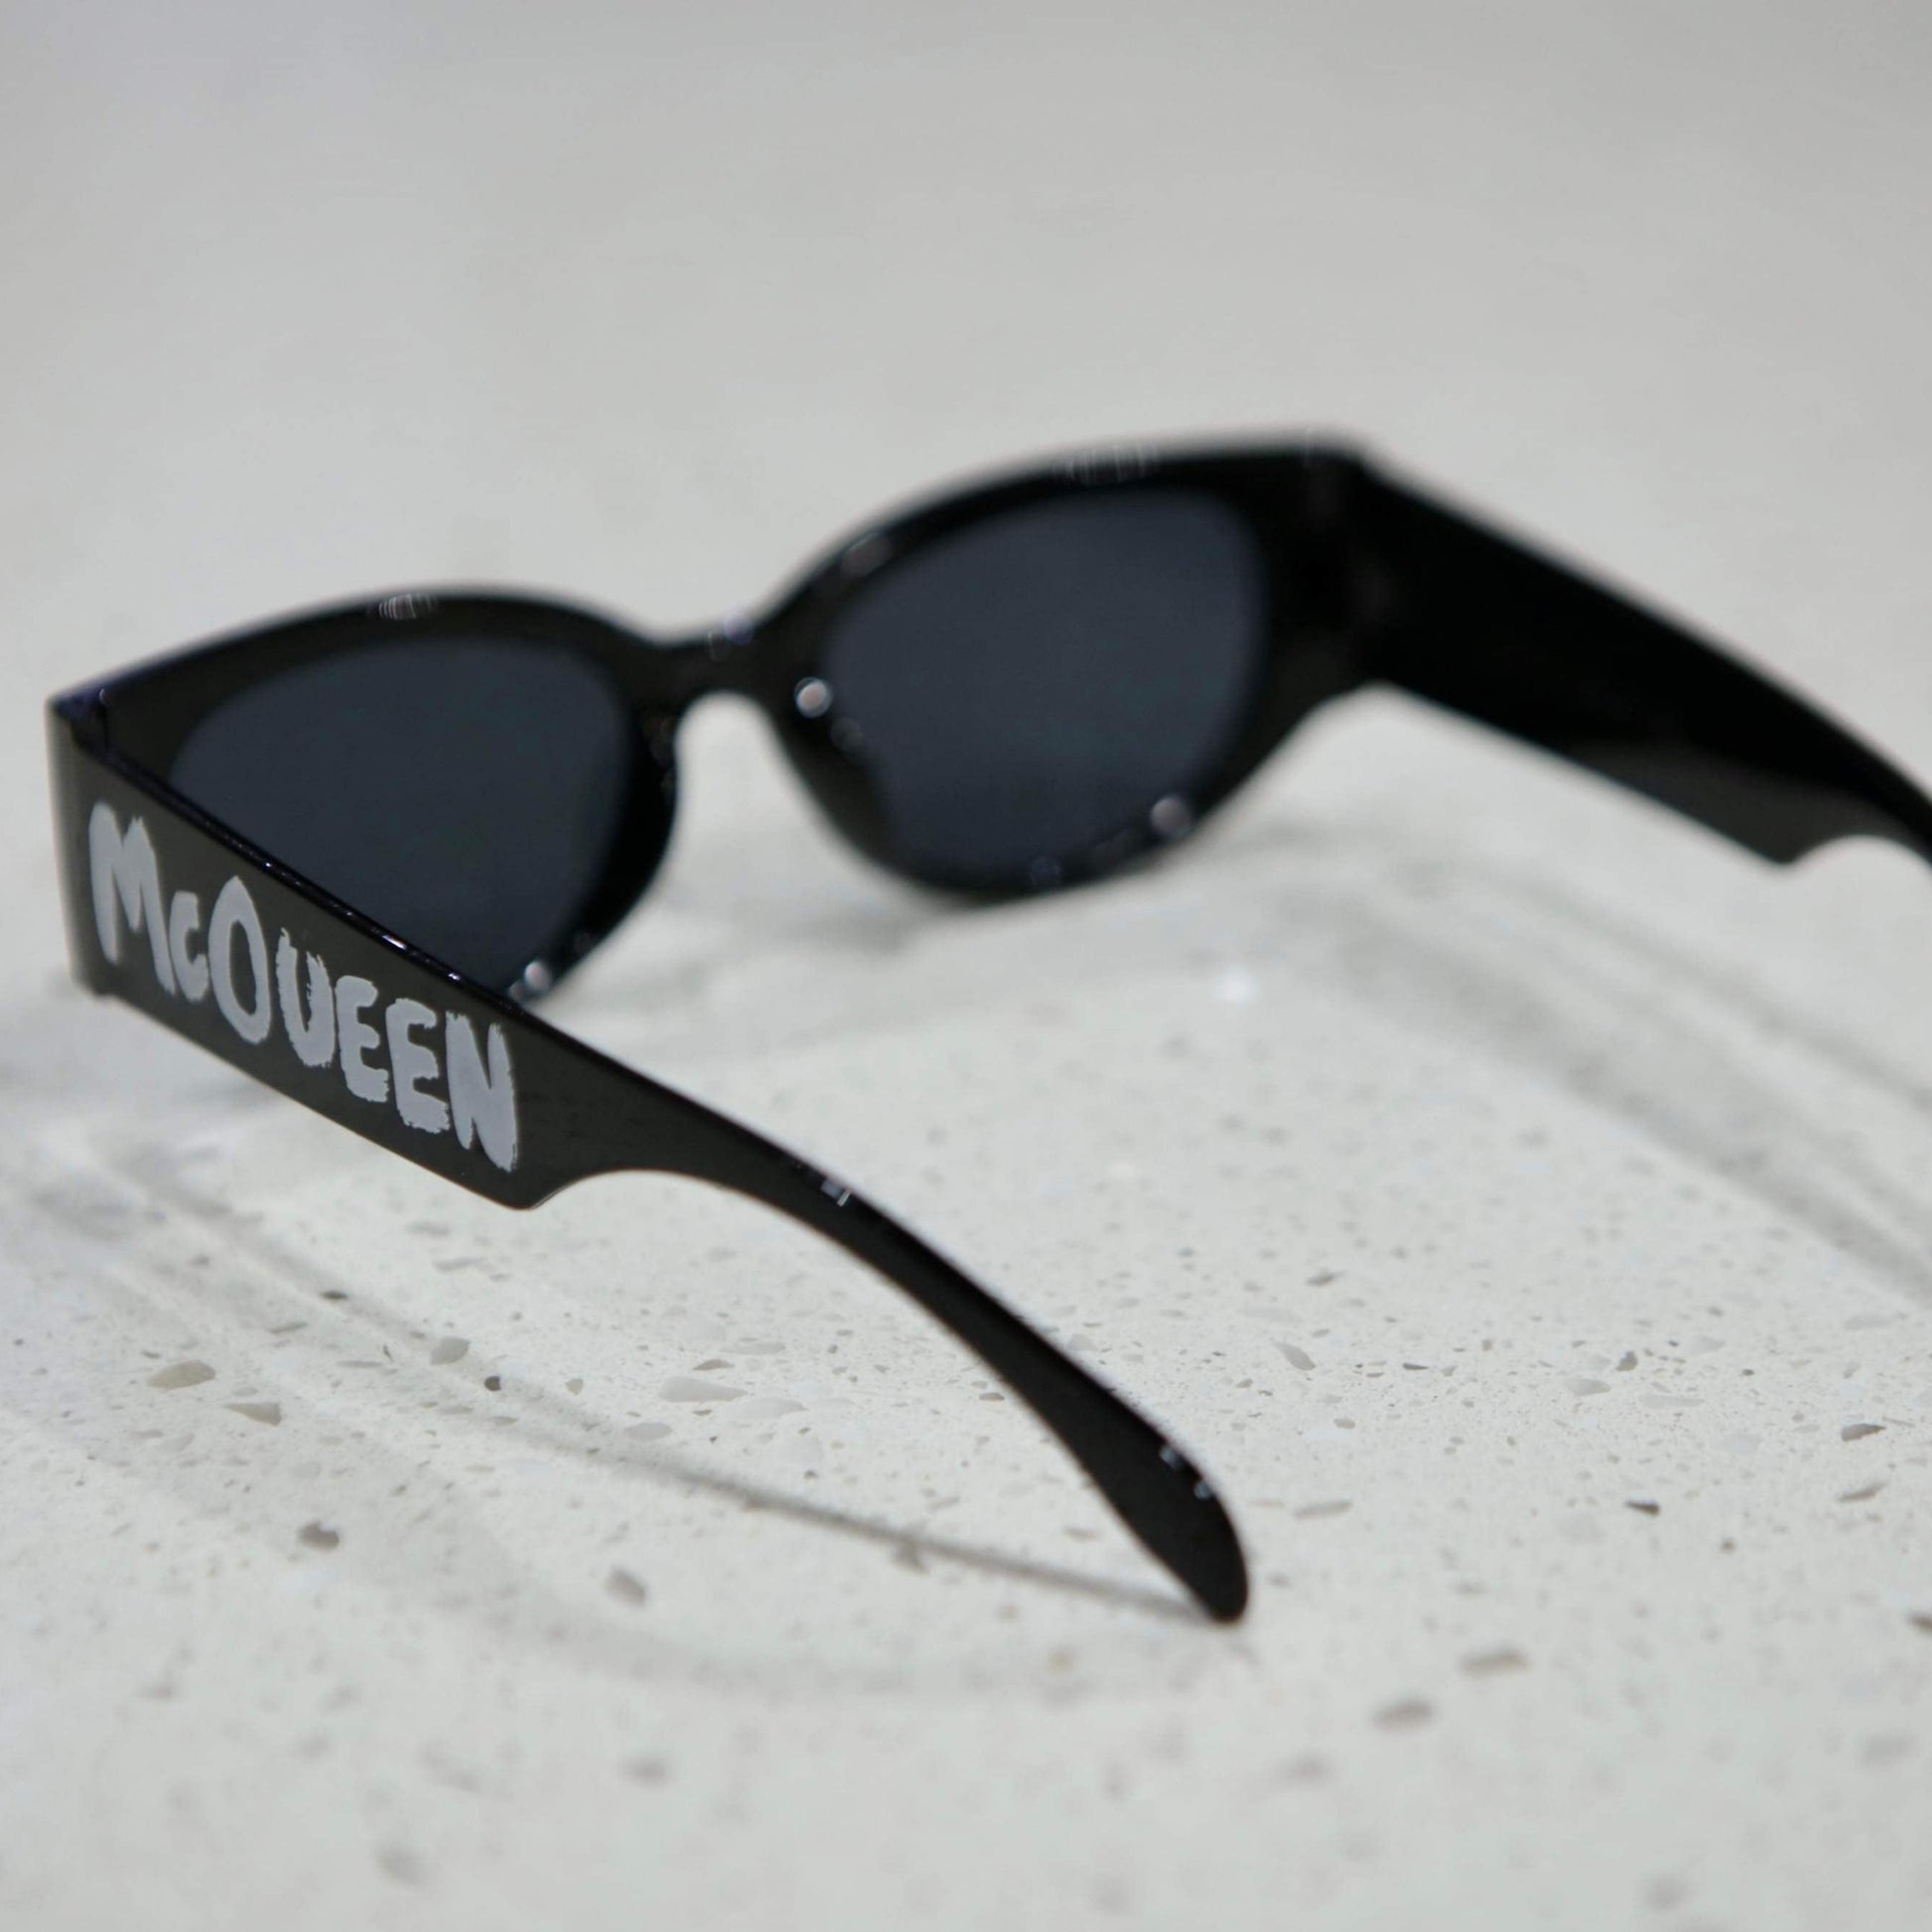 The Designer Sunglasses - BaeBekillinem- Black/White- Pink/ Black- Mcqueen